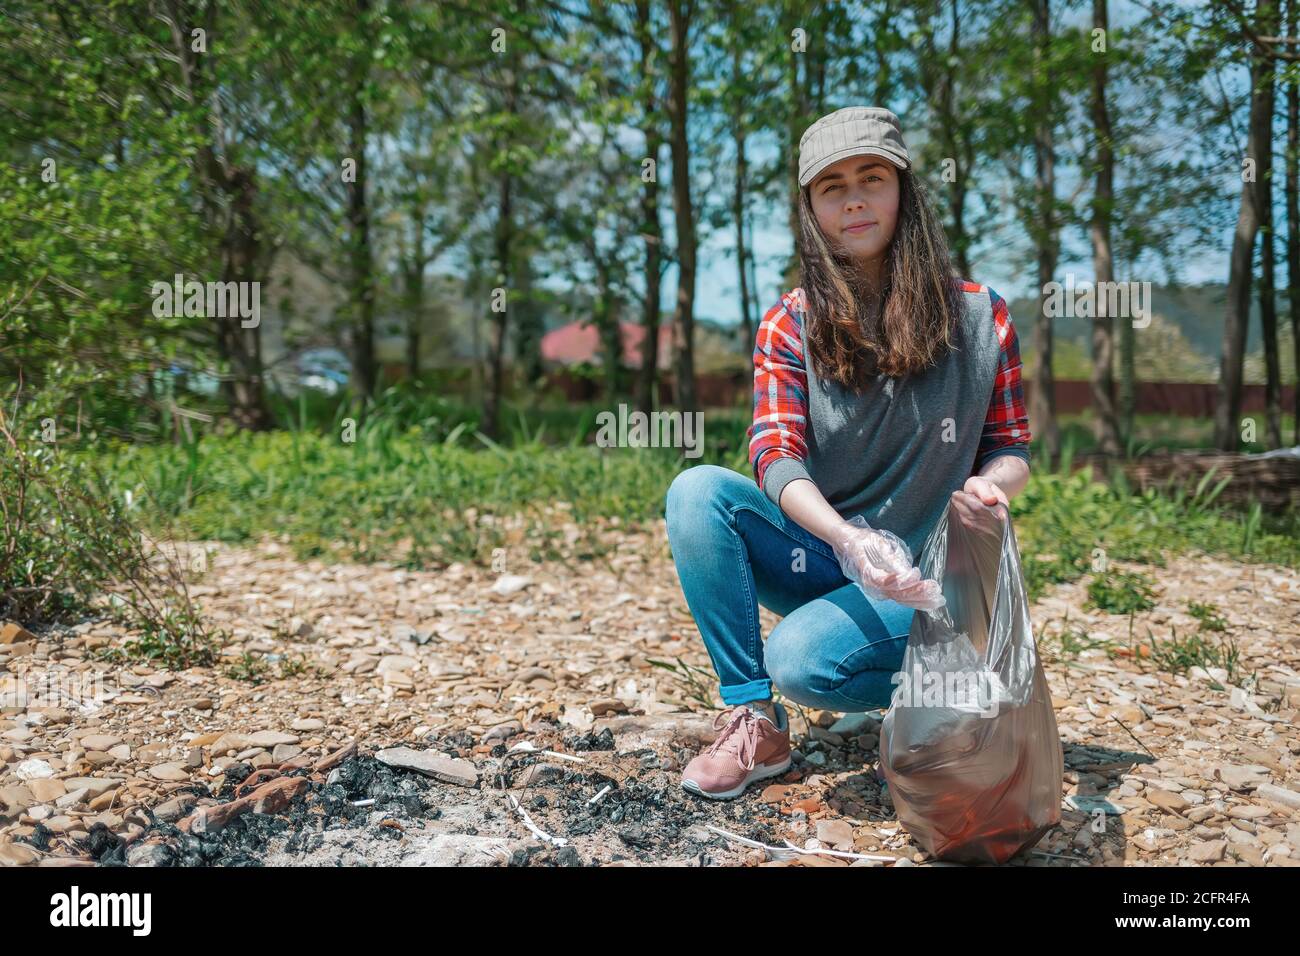 Una giovane volontaria femminile raccoglie i rifiuti nell'area pic-nic. Il concetto di giorno della terra e di ecologia e conservazione ambientale. Foto Stock